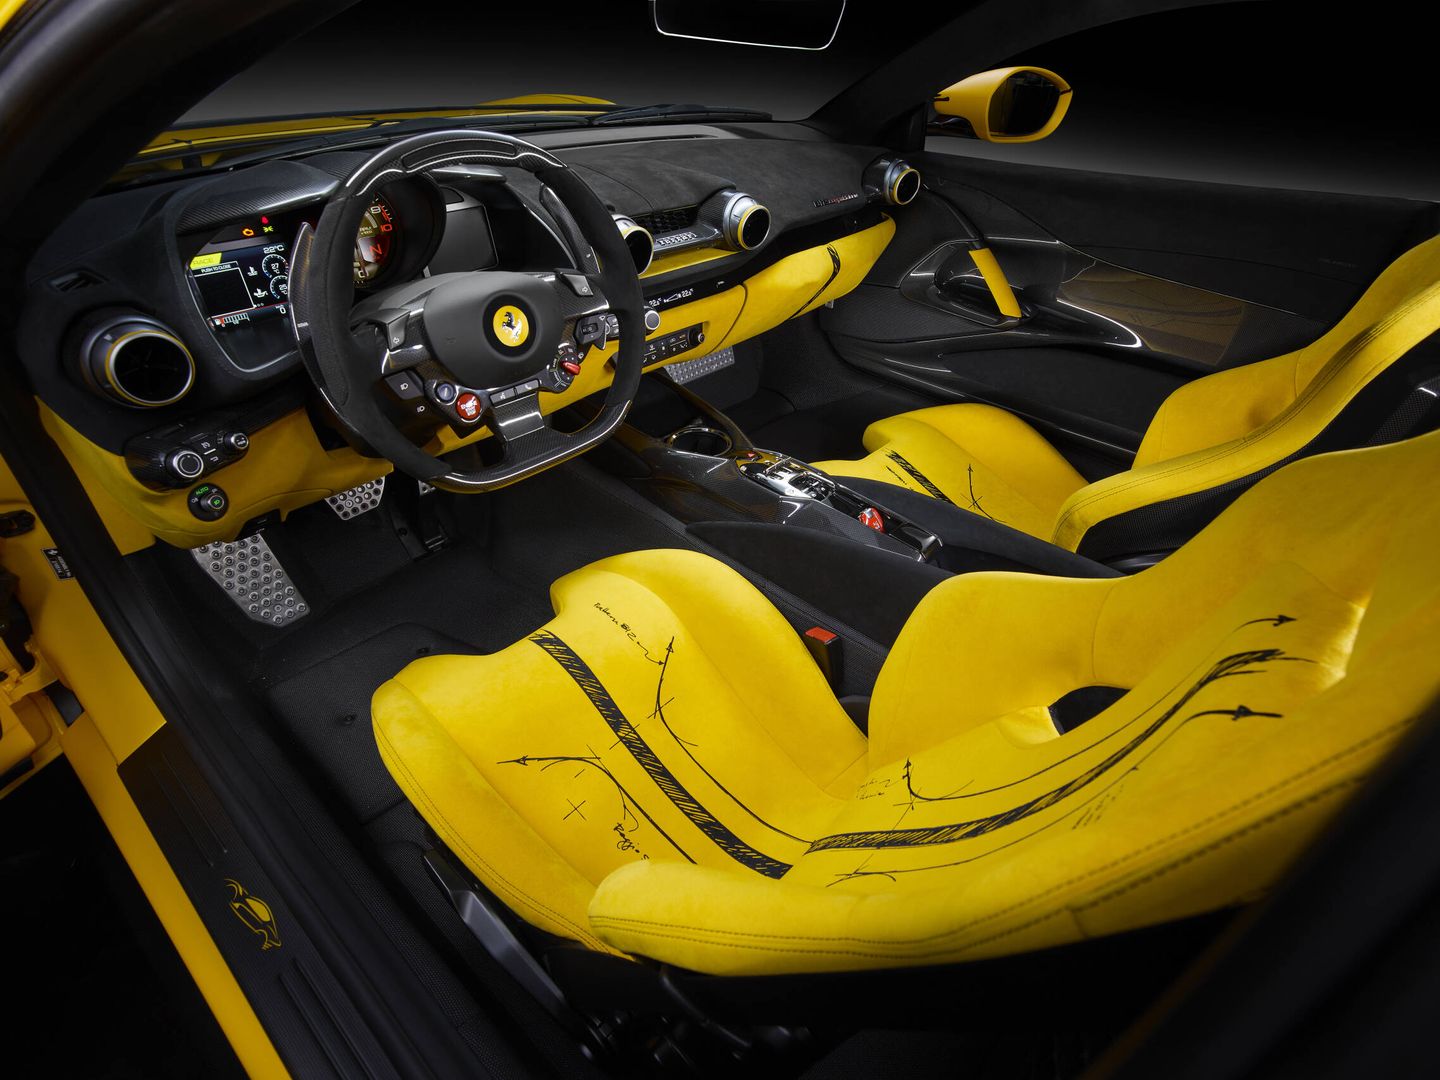 El interior, a juego con el exterior, es una combinación de las tonalidades amarilla y negra.